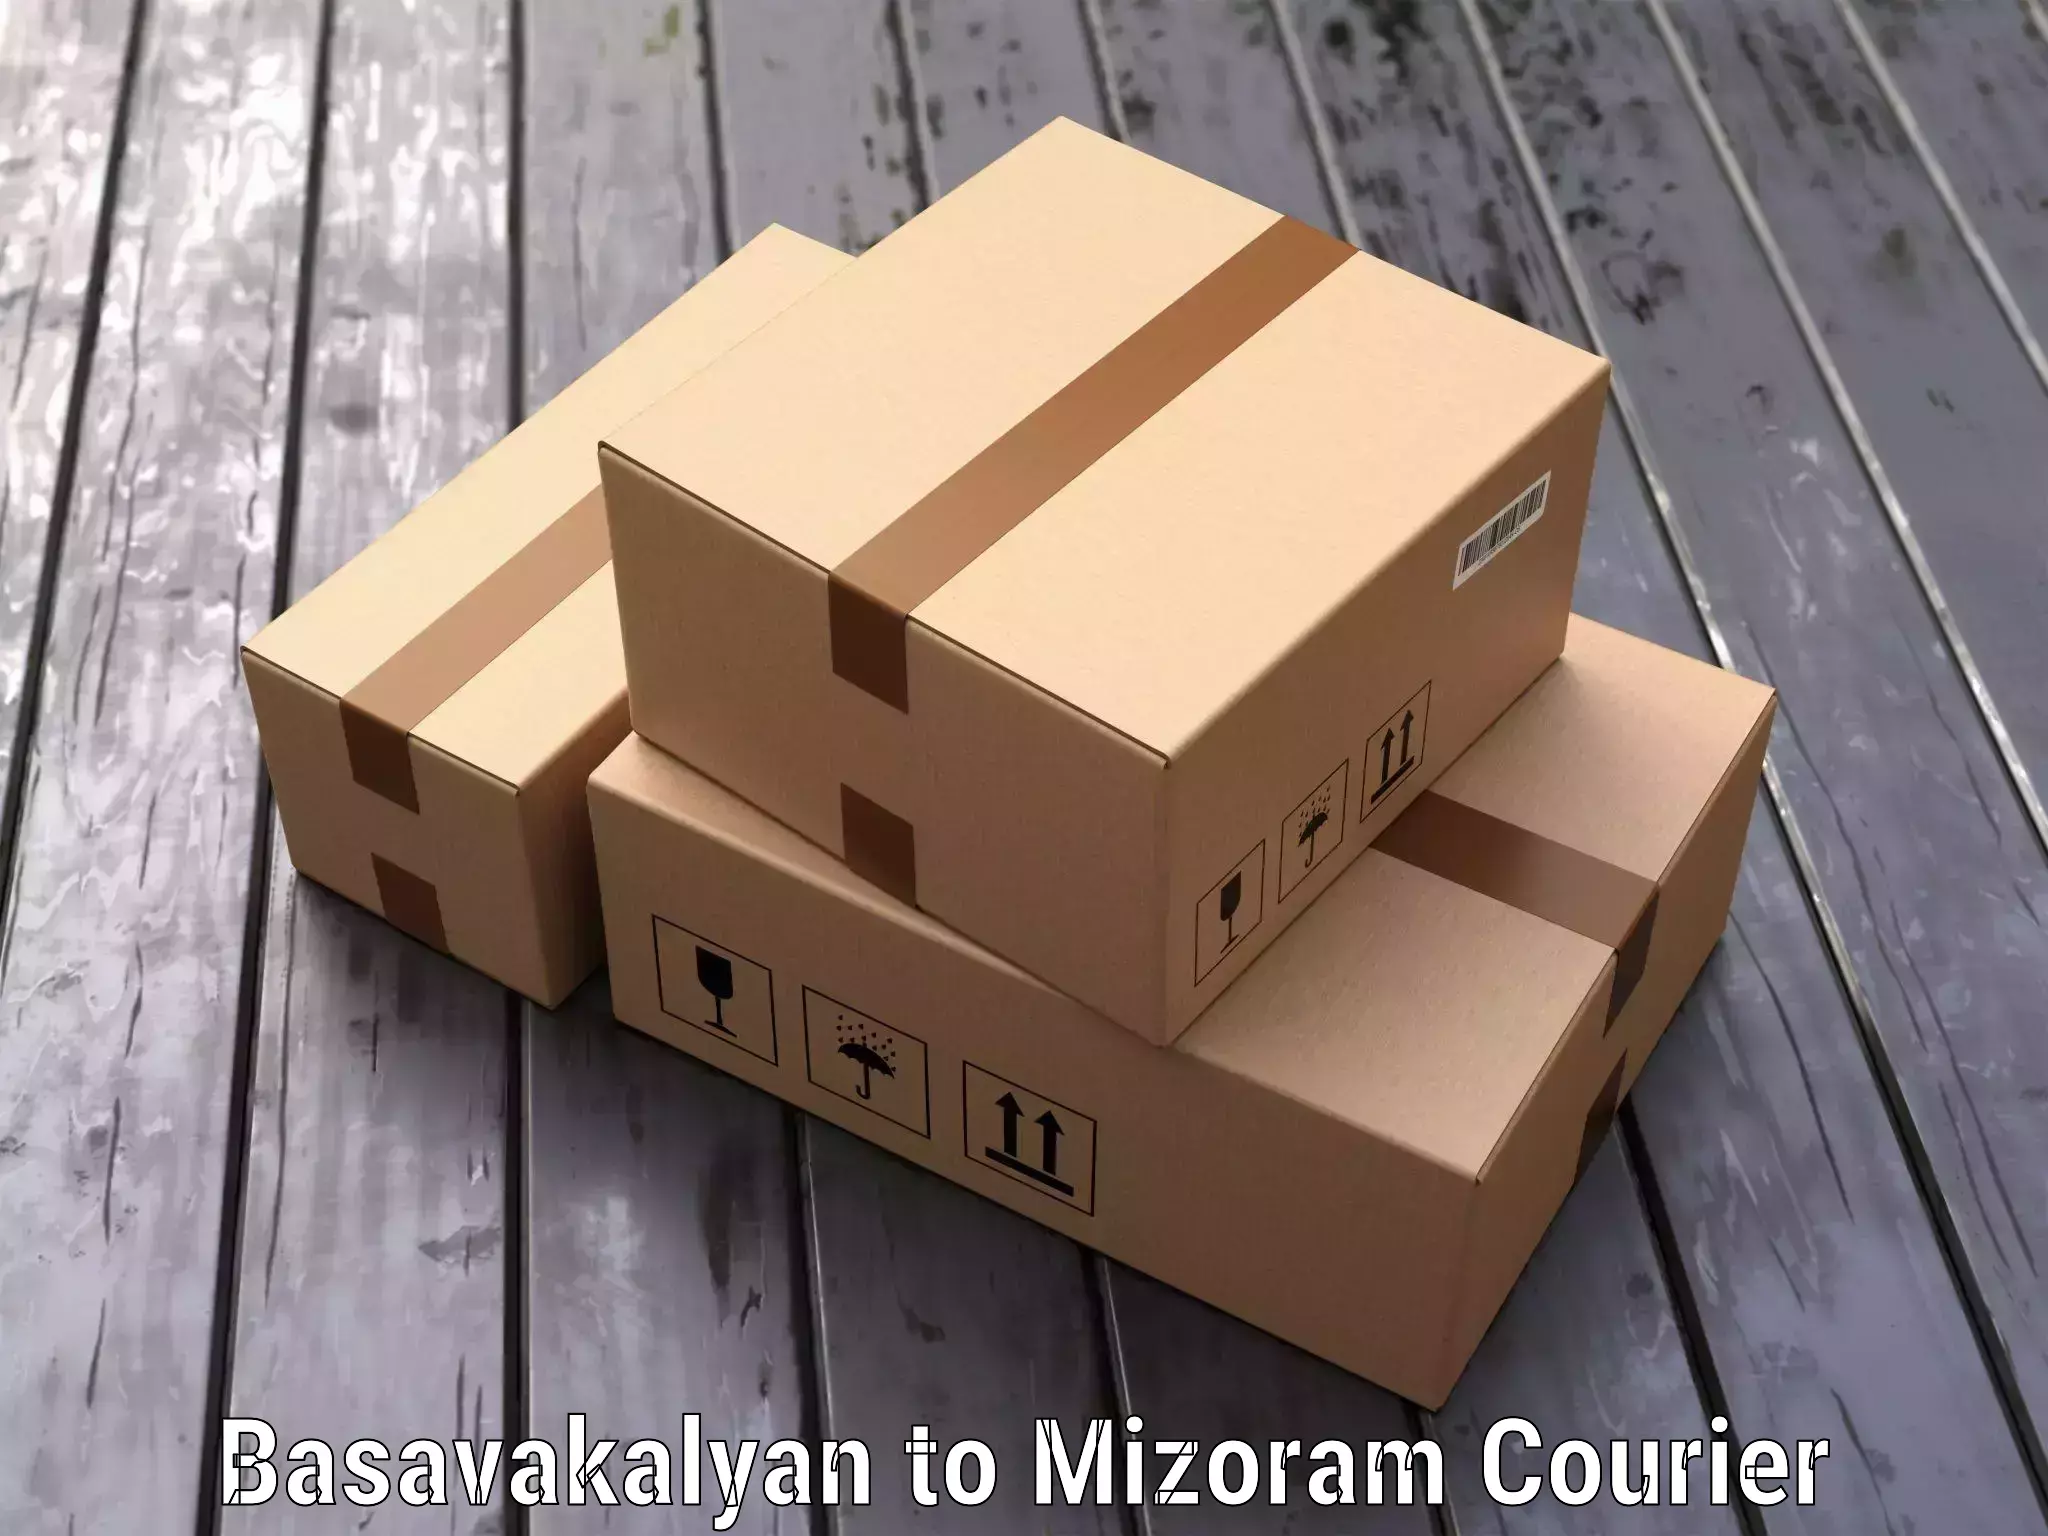 Hassle-free luggage shipping Basavakalyan to Mizoram